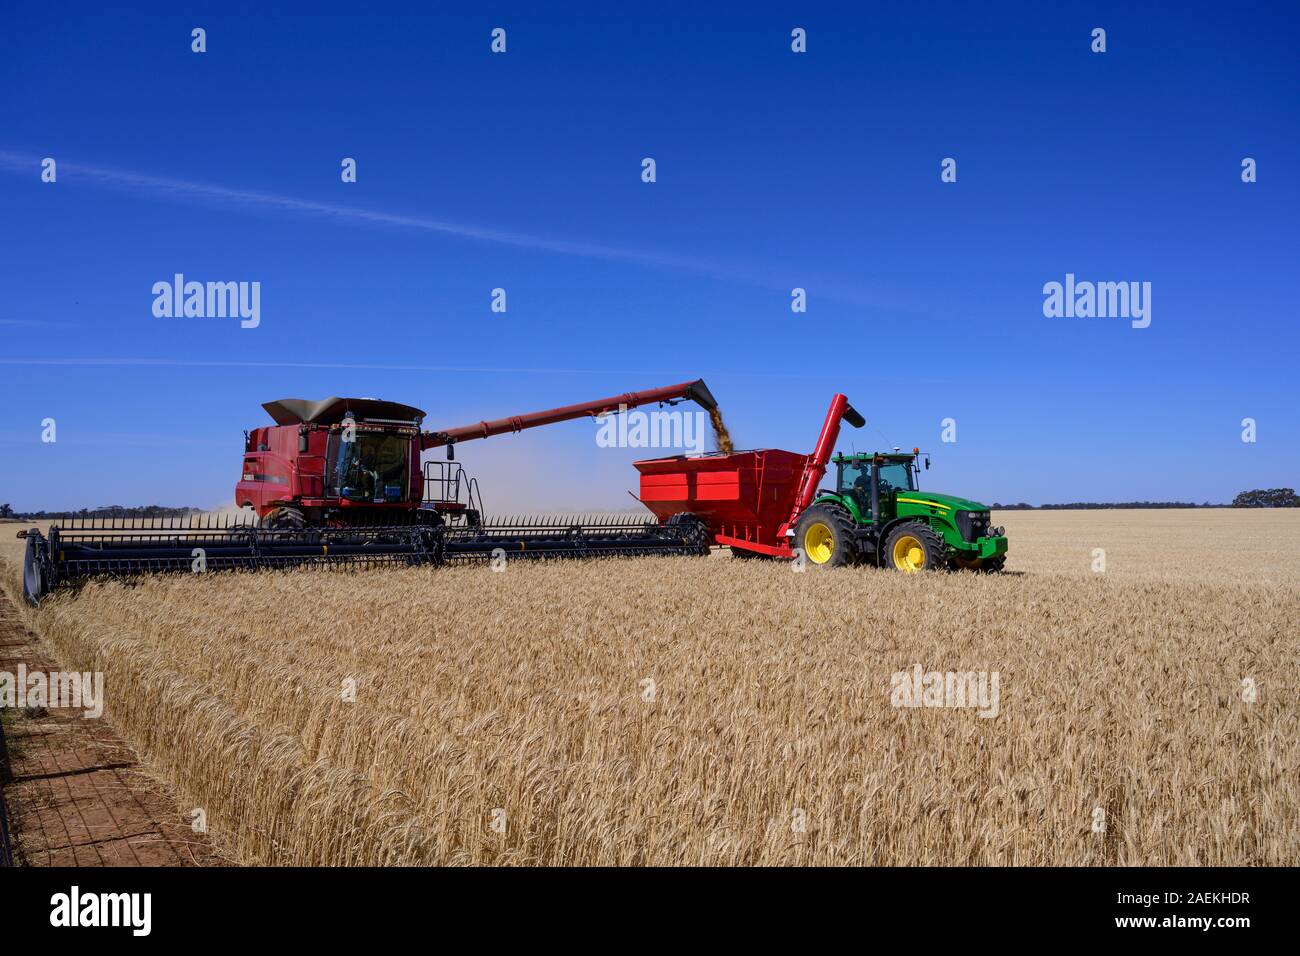 Harveting un champ de céréales dans la région de Wimmera de Victoria, Australie. Banque D'Images